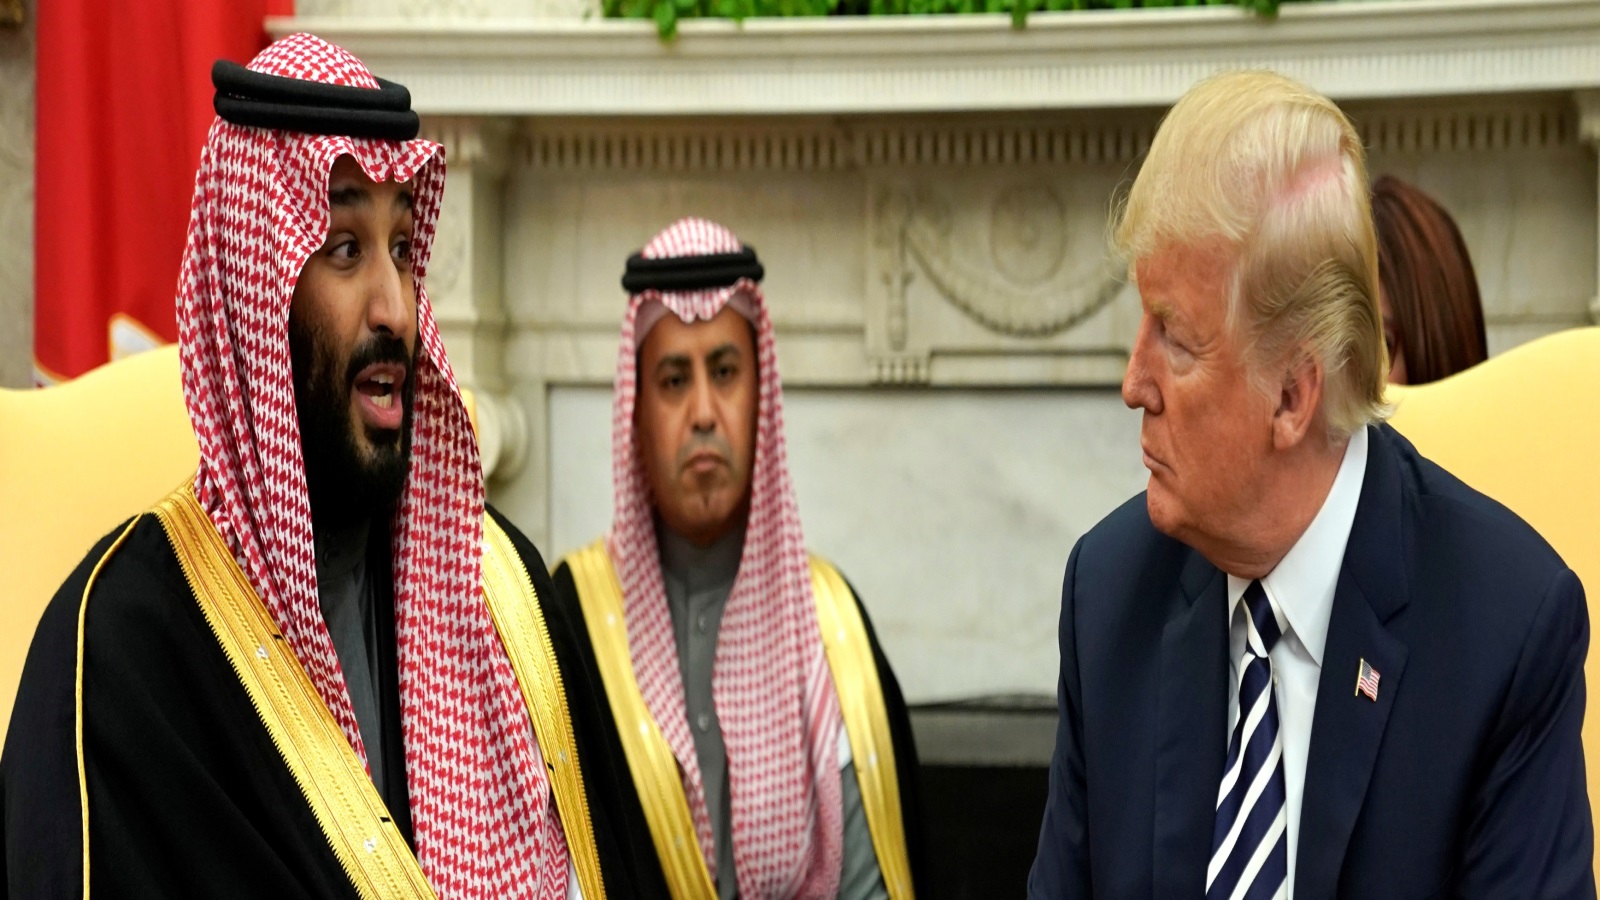 الصورة النمطية التي ترى في العلاقات الأمريكية-السعودية علاقة مبنية على معادلة النفط مقابل الأمن، هي صورة ناقصة قد تقدم لنا نتائج ناقصة لتفسير العلاقات الأمريكية السعودية